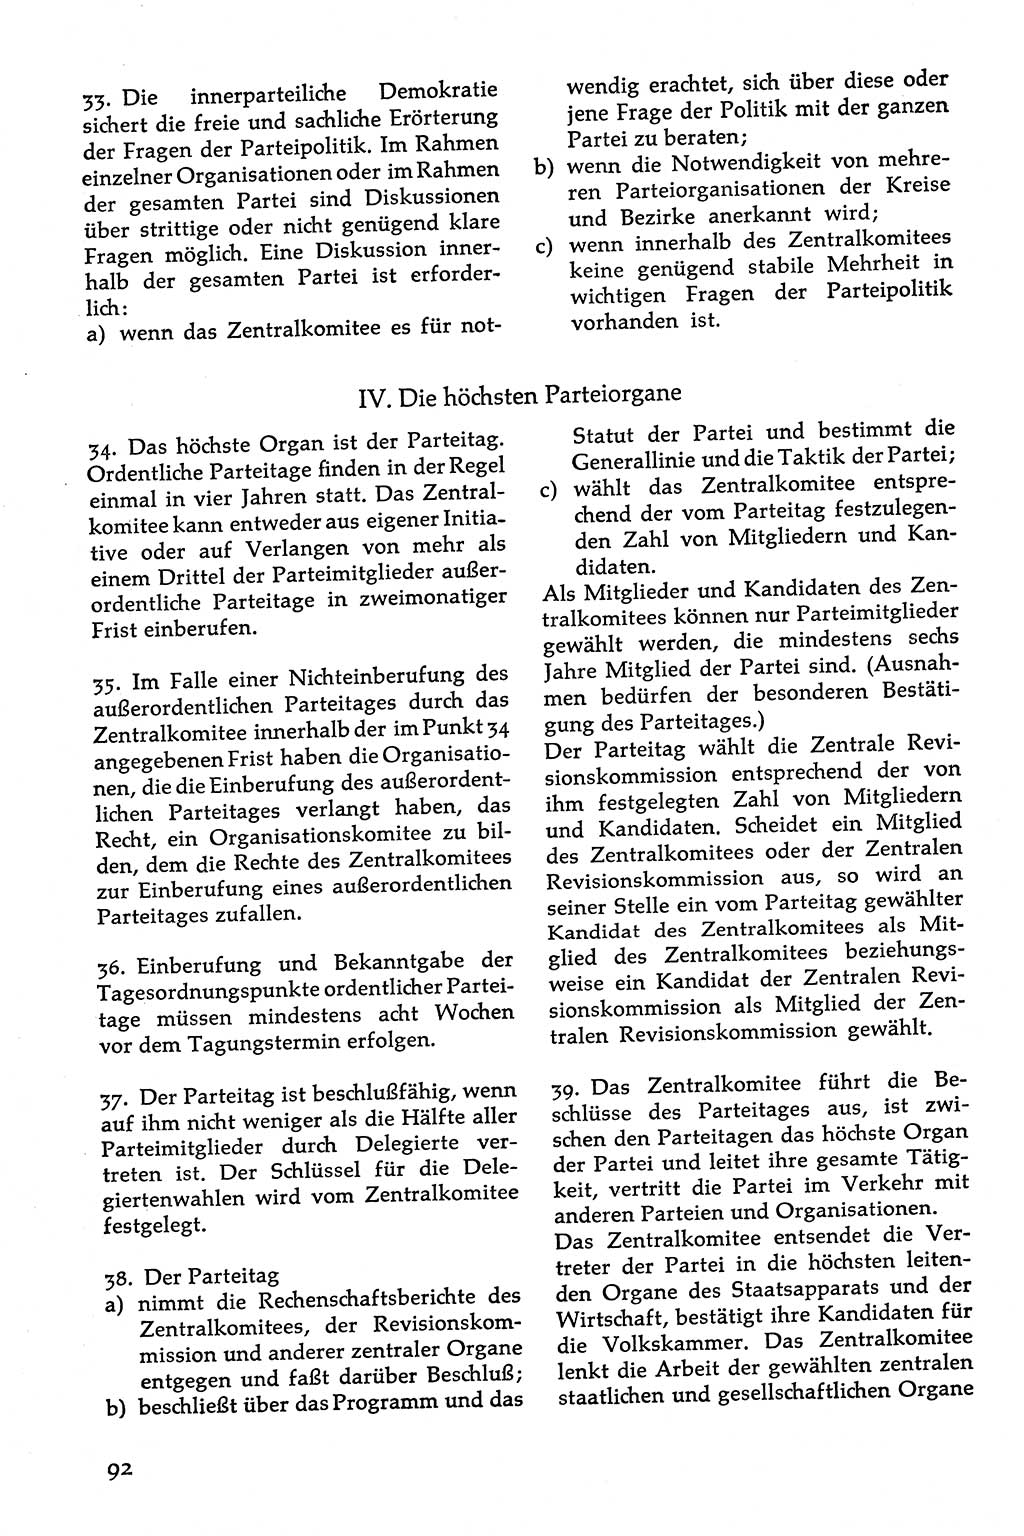 Volksdemokratische Ordnung in Mitteldeutschland [Deutsche Demokratische Republik (DDR)], Texte zur verfassungsrechtlichen Situation 1963, Seite 92 (Volksdem. Ordn. Md. DDR 1963, S. 92)